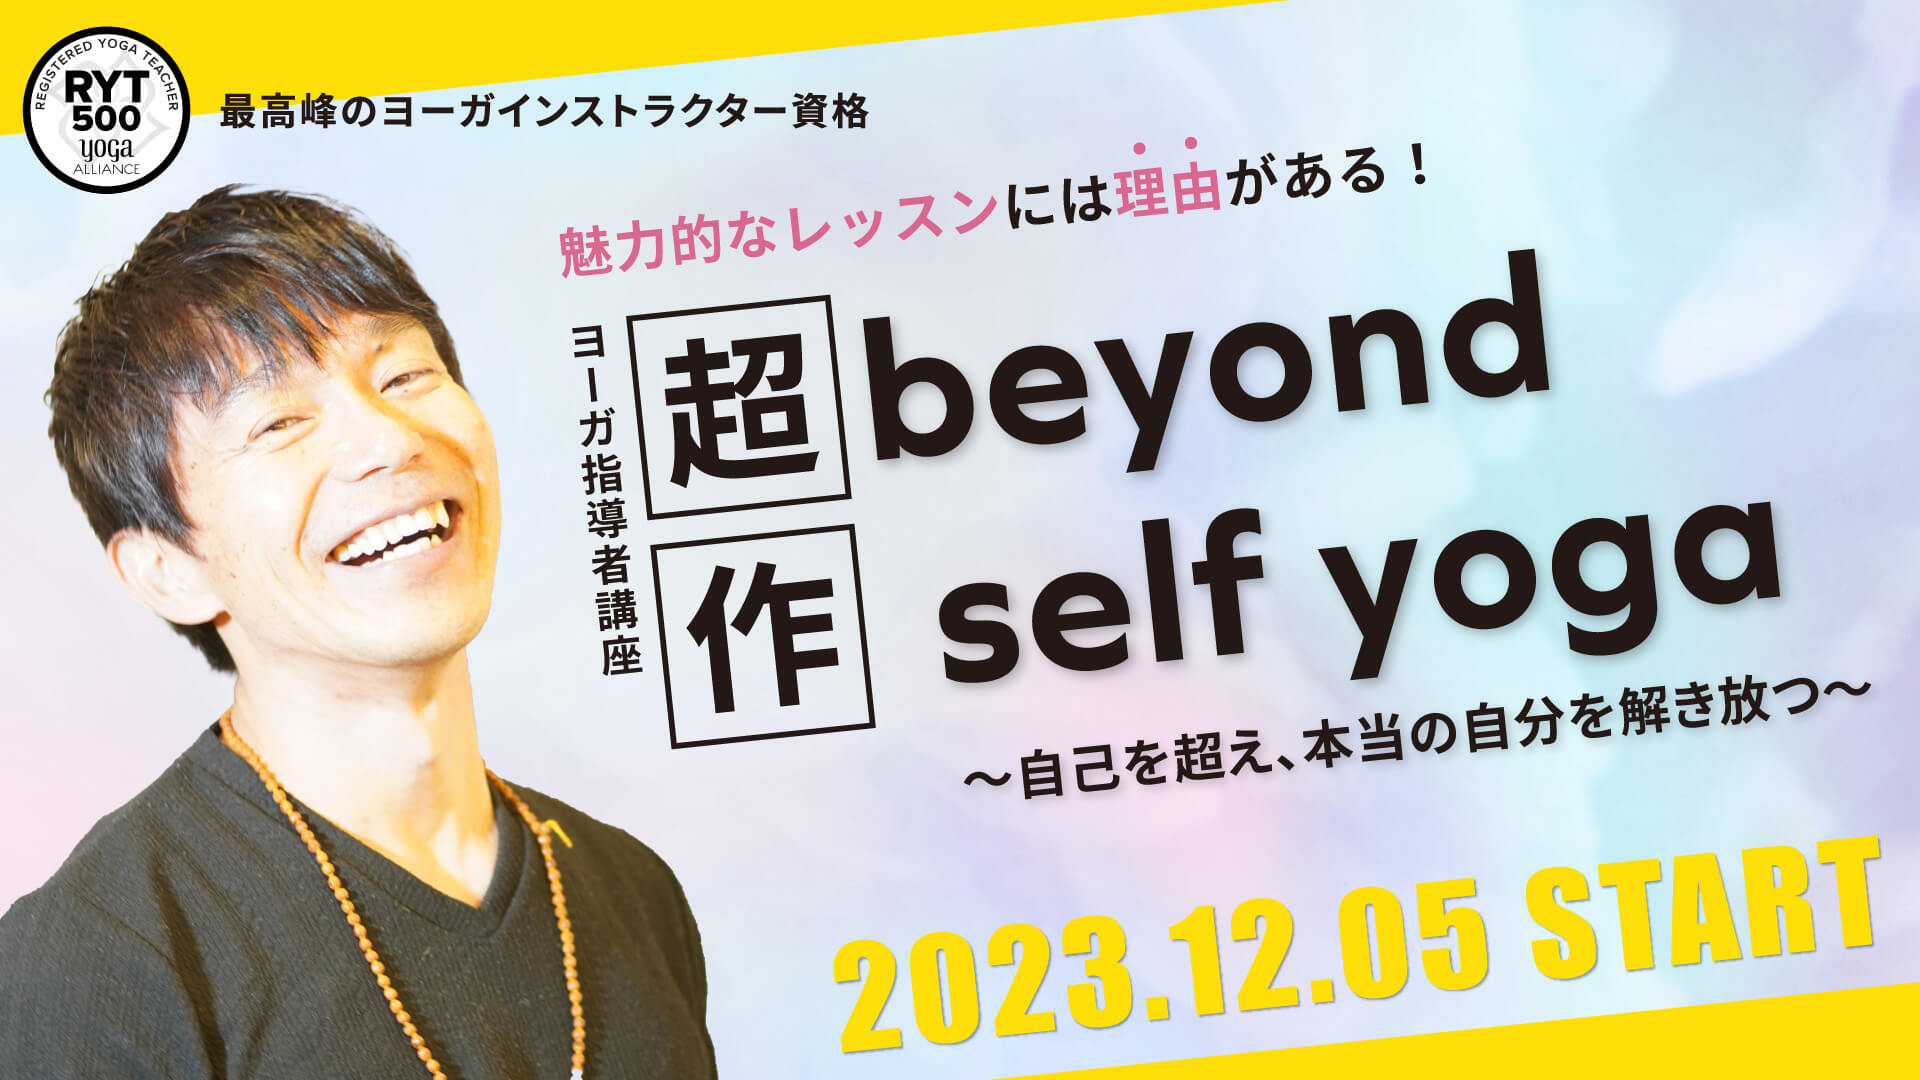 【RYT500】ヨガ指導者講座「Beyond self yoga」